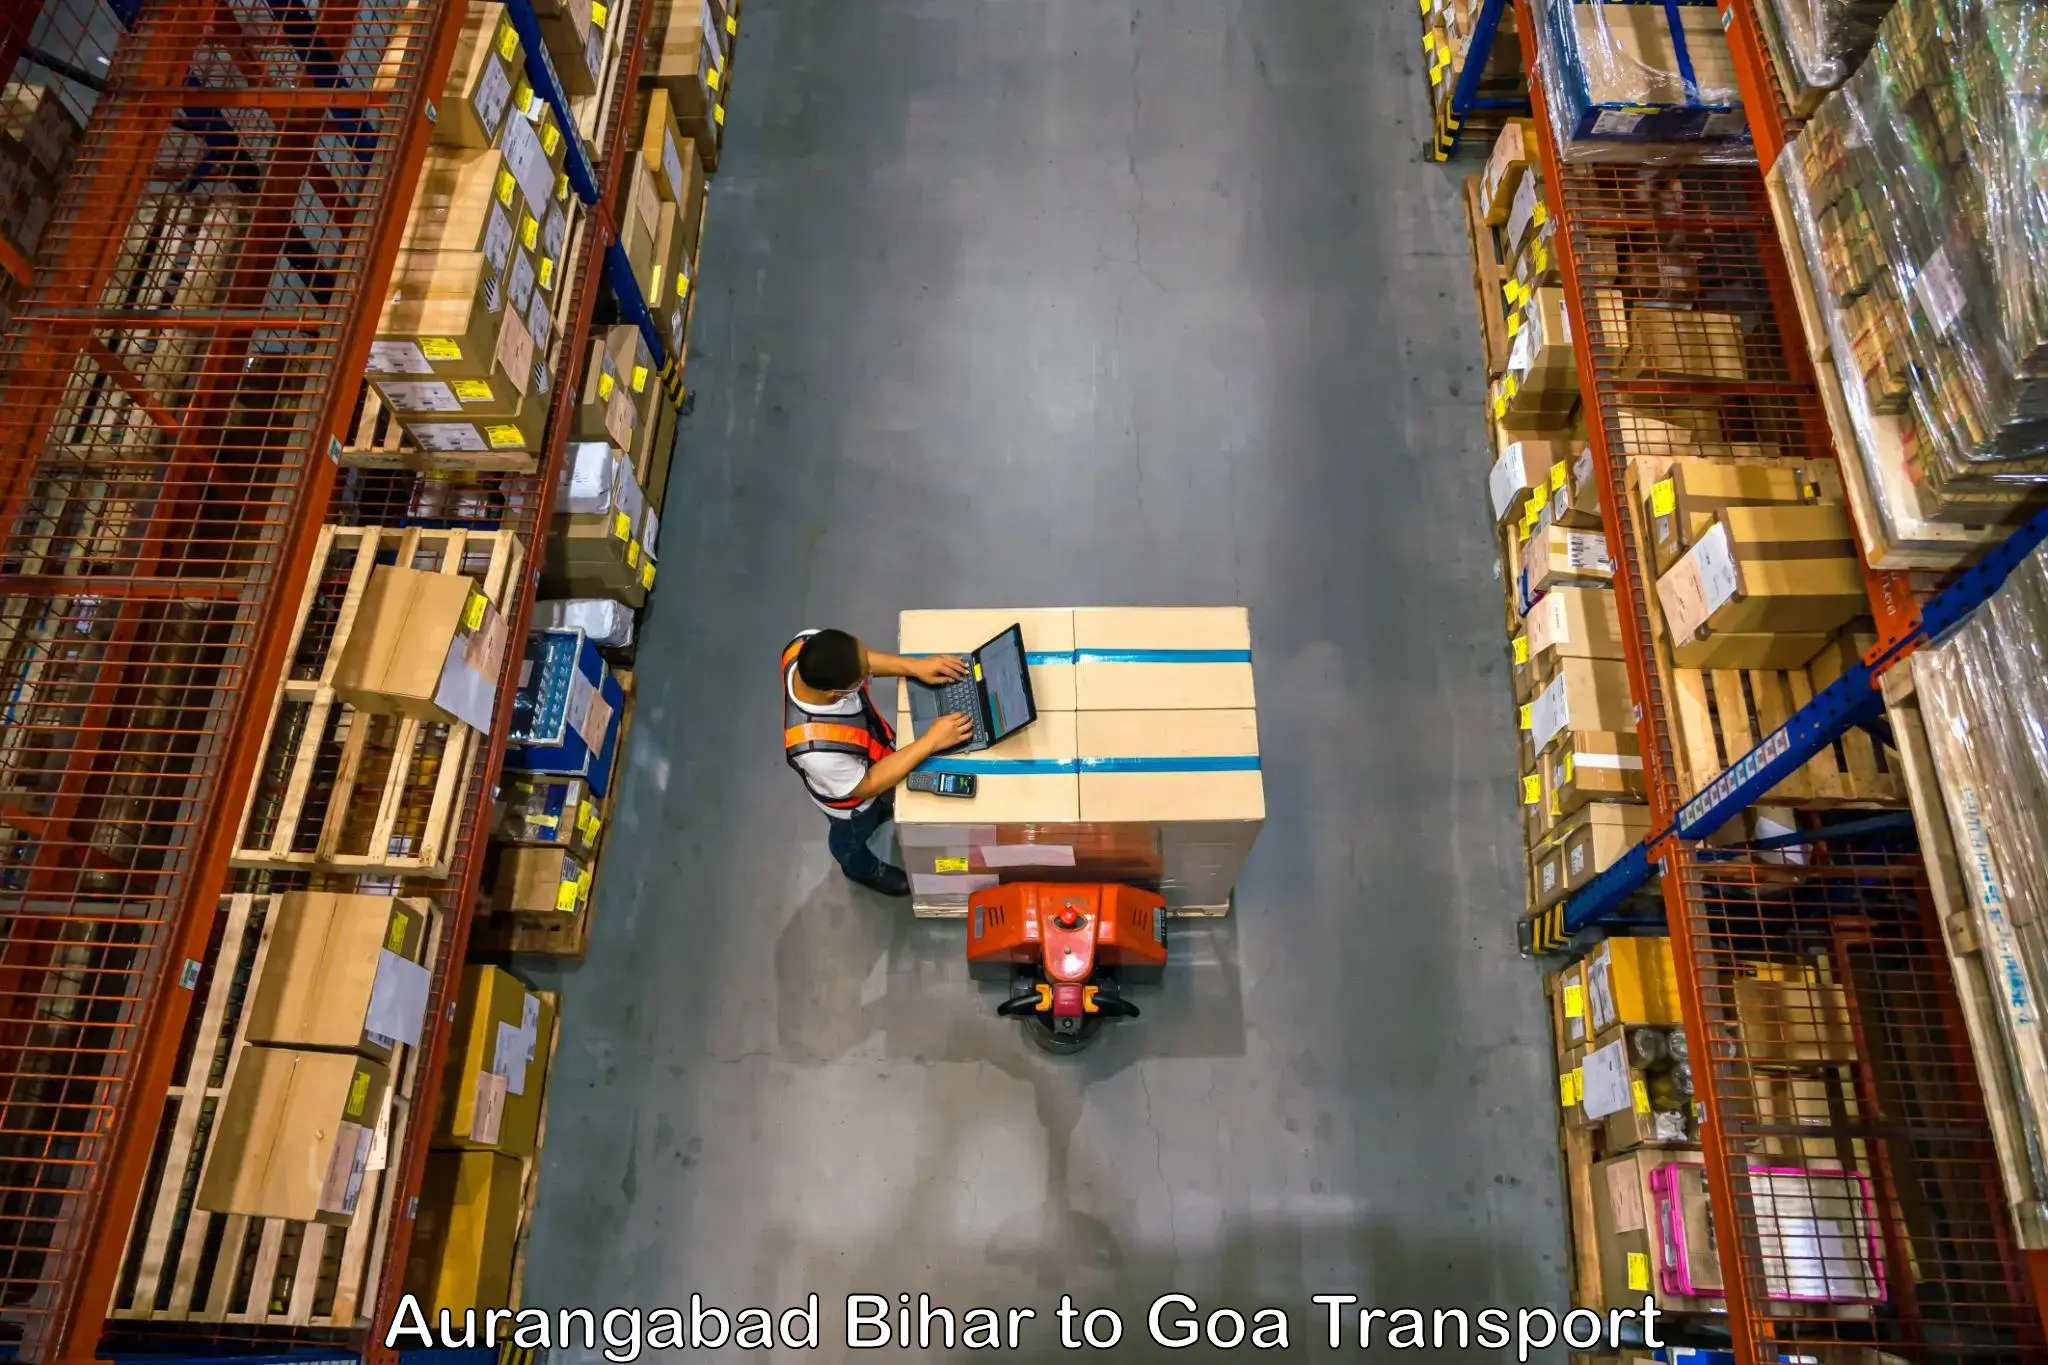 Bike shipping service Aurangabad Bihar to Mormugao Port